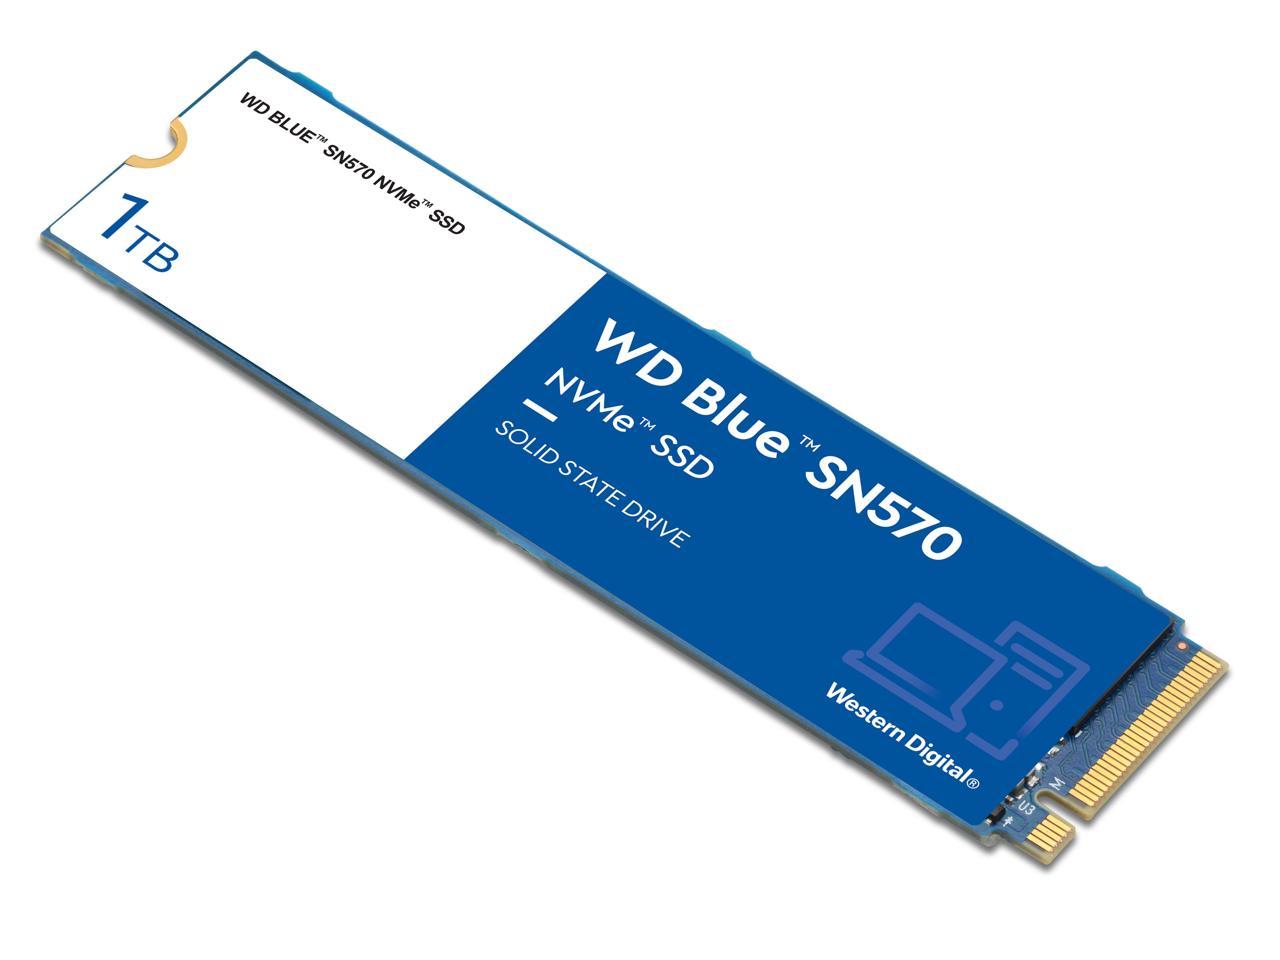 1TB WD Blue SN570 NVMe SSD $85